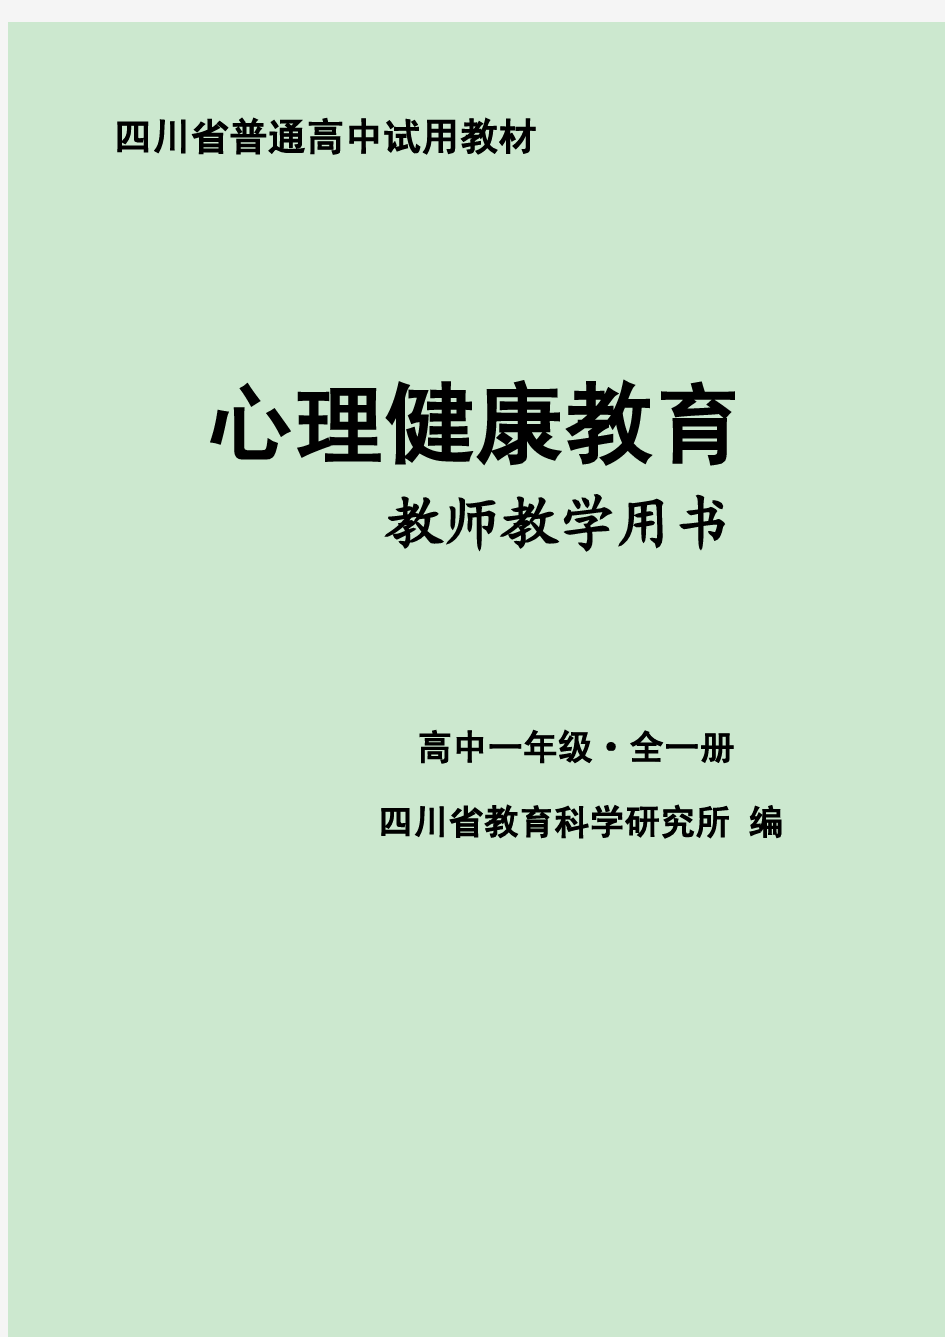 四川省普通高中试用教材《心理健康教育》 教师用书(高中一年级·全一册)